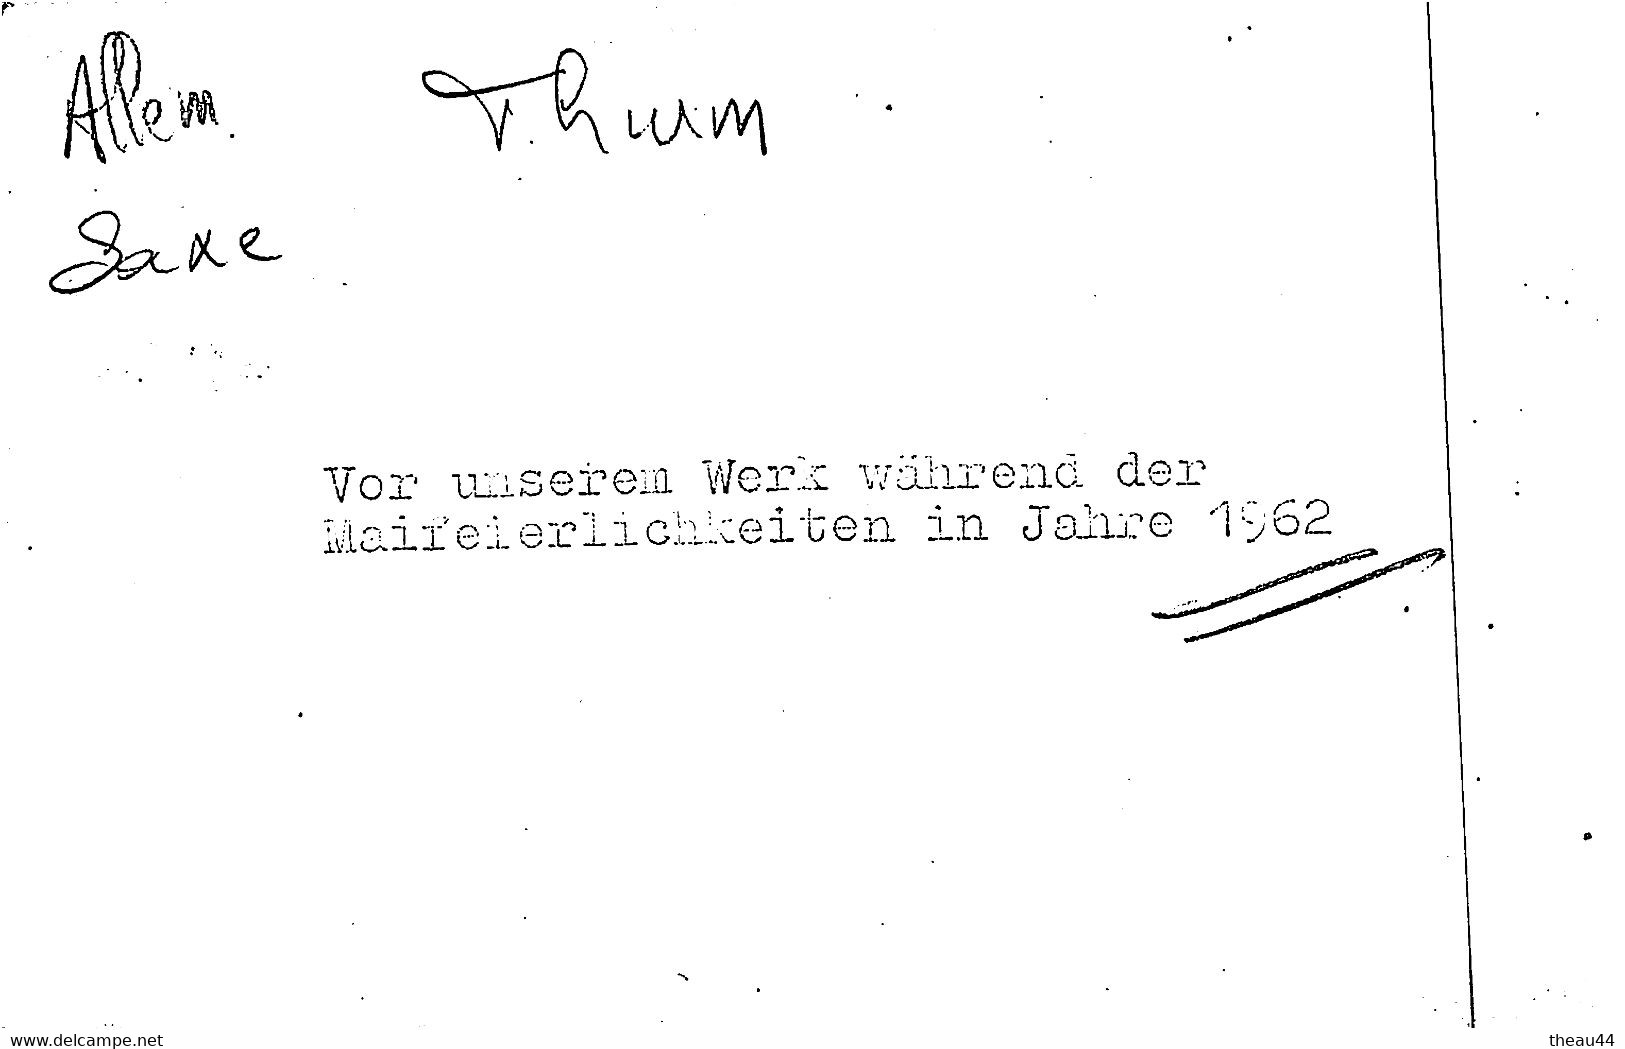 ALLEMAGNE - THURM - THUM  - Cliché D'une Cérémonie Officielle En 1962 Dans La Cour D'une Usine - Voir Description - Thum